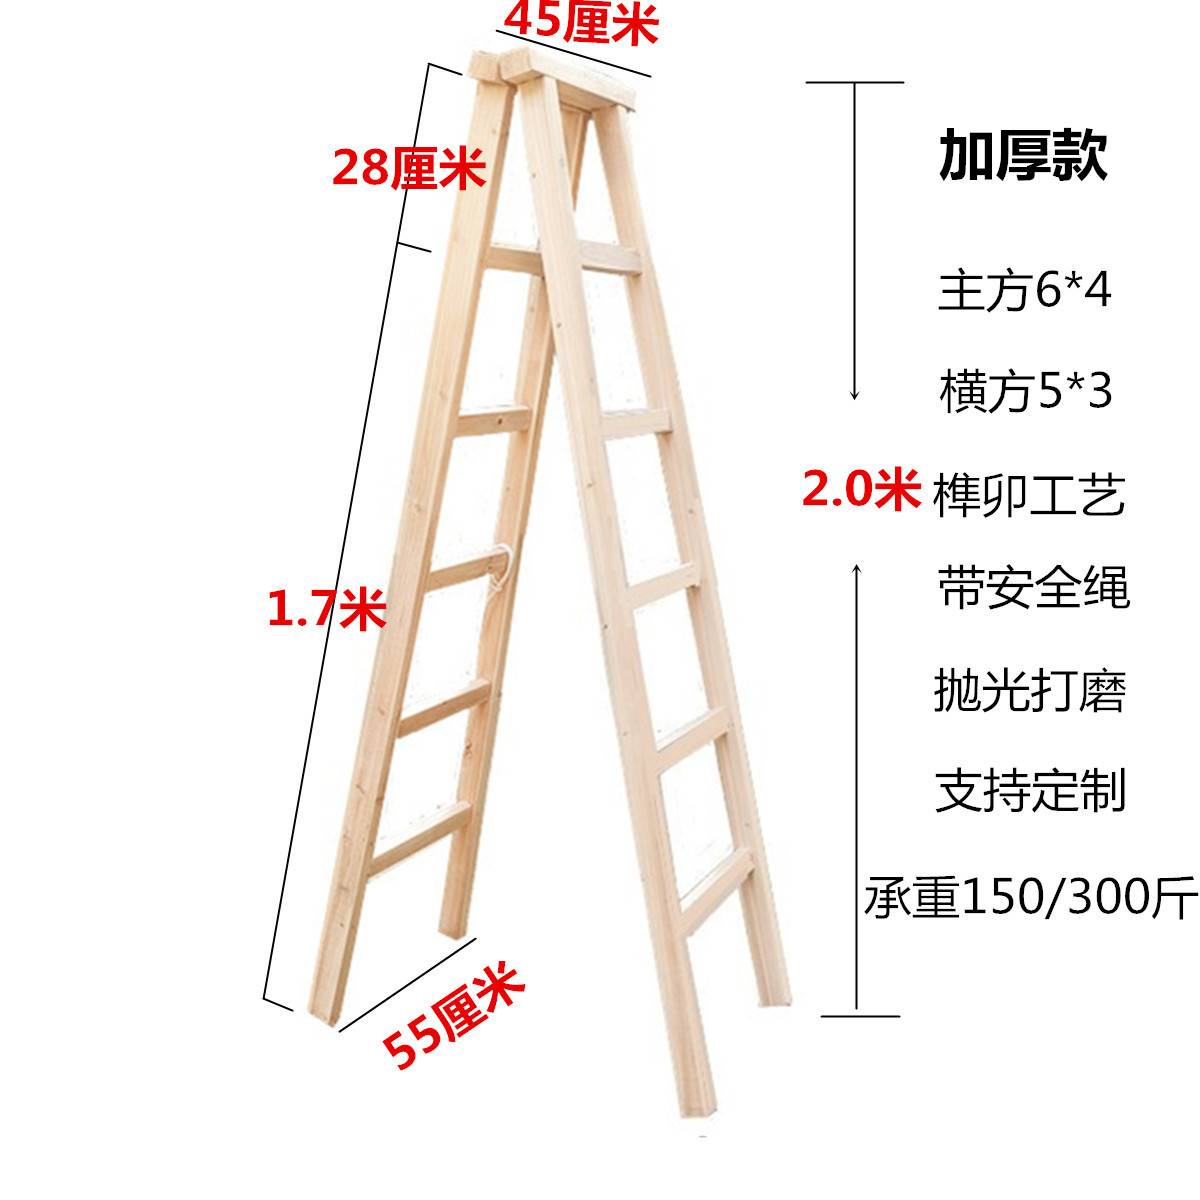 实木梯子人字梯双侧梯家用楼梯室内装修工程梯安全加厚加粗多用